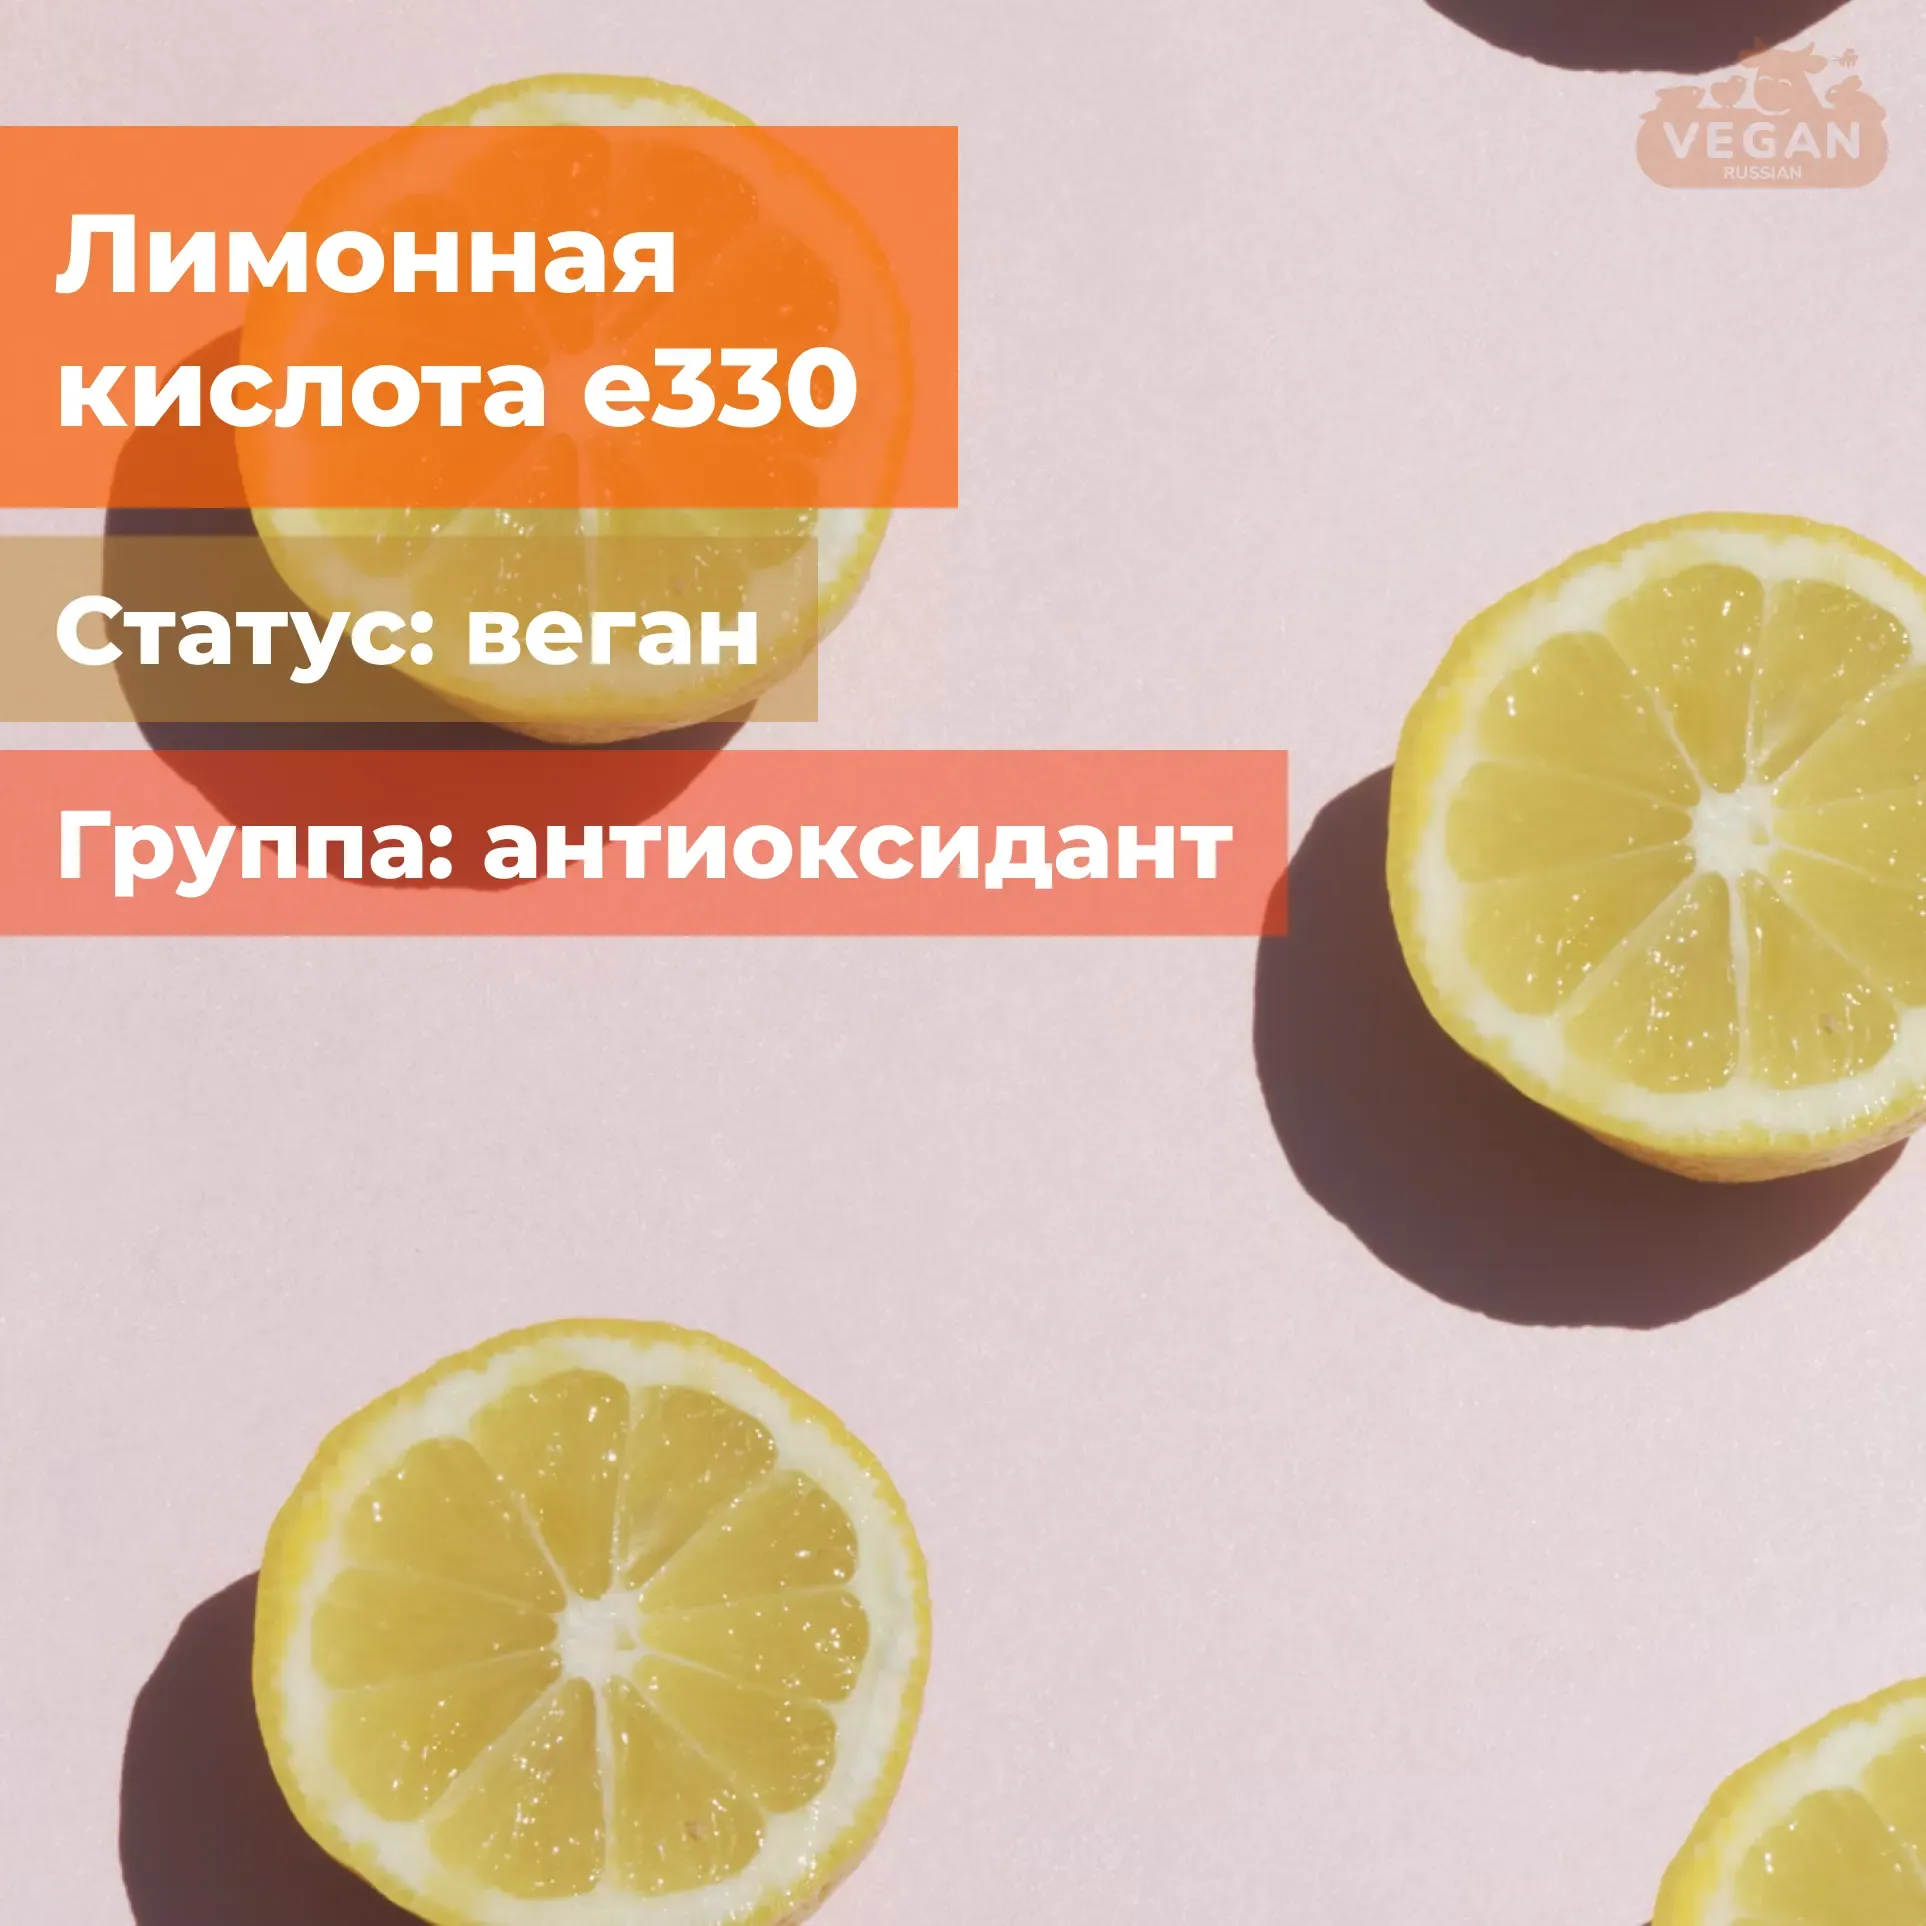 Лимонная кислота е330